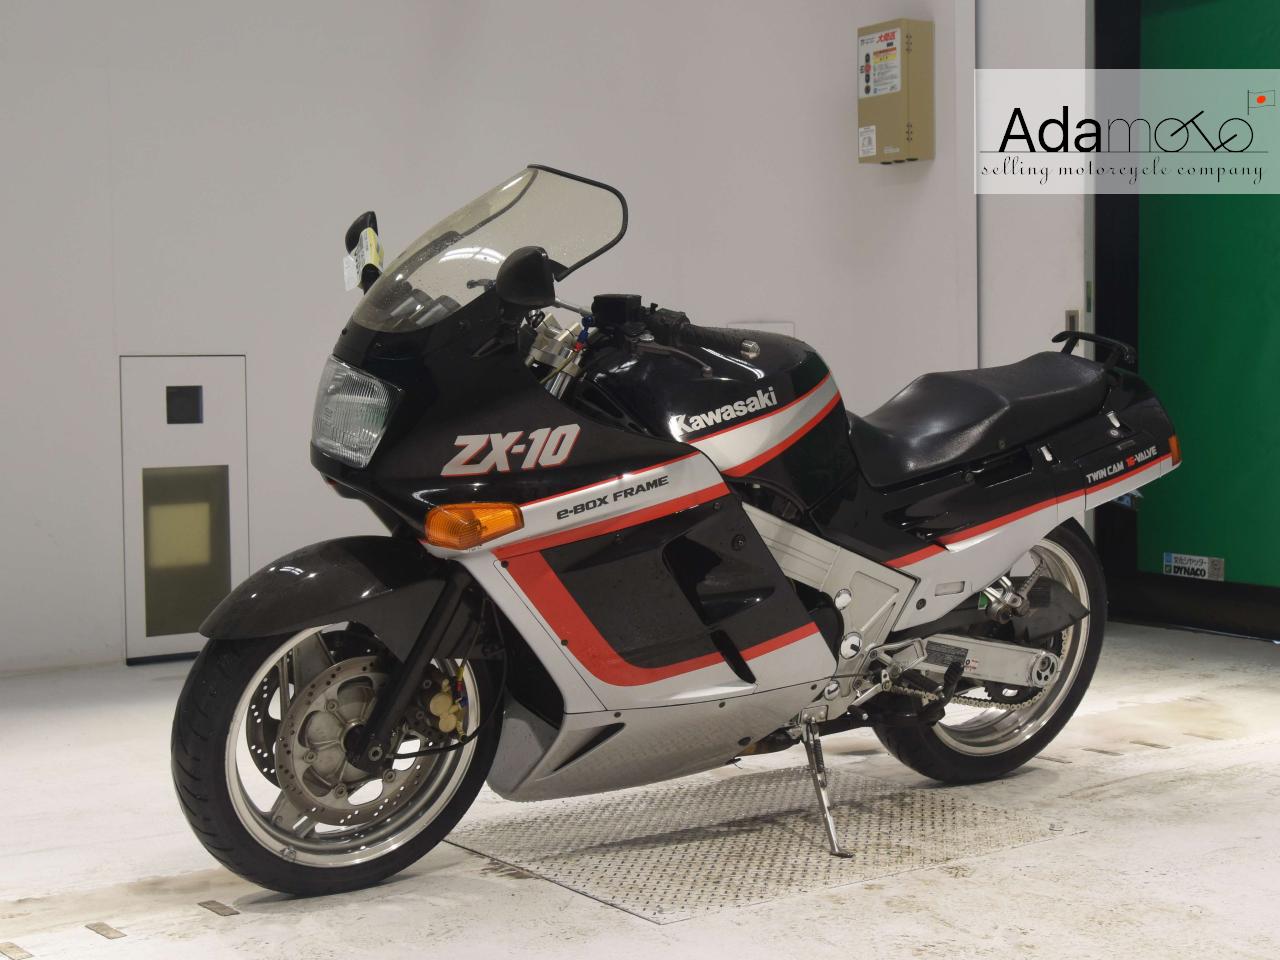 Kawasaki ZX-10 - Adamoto - Motorcycles from Japan